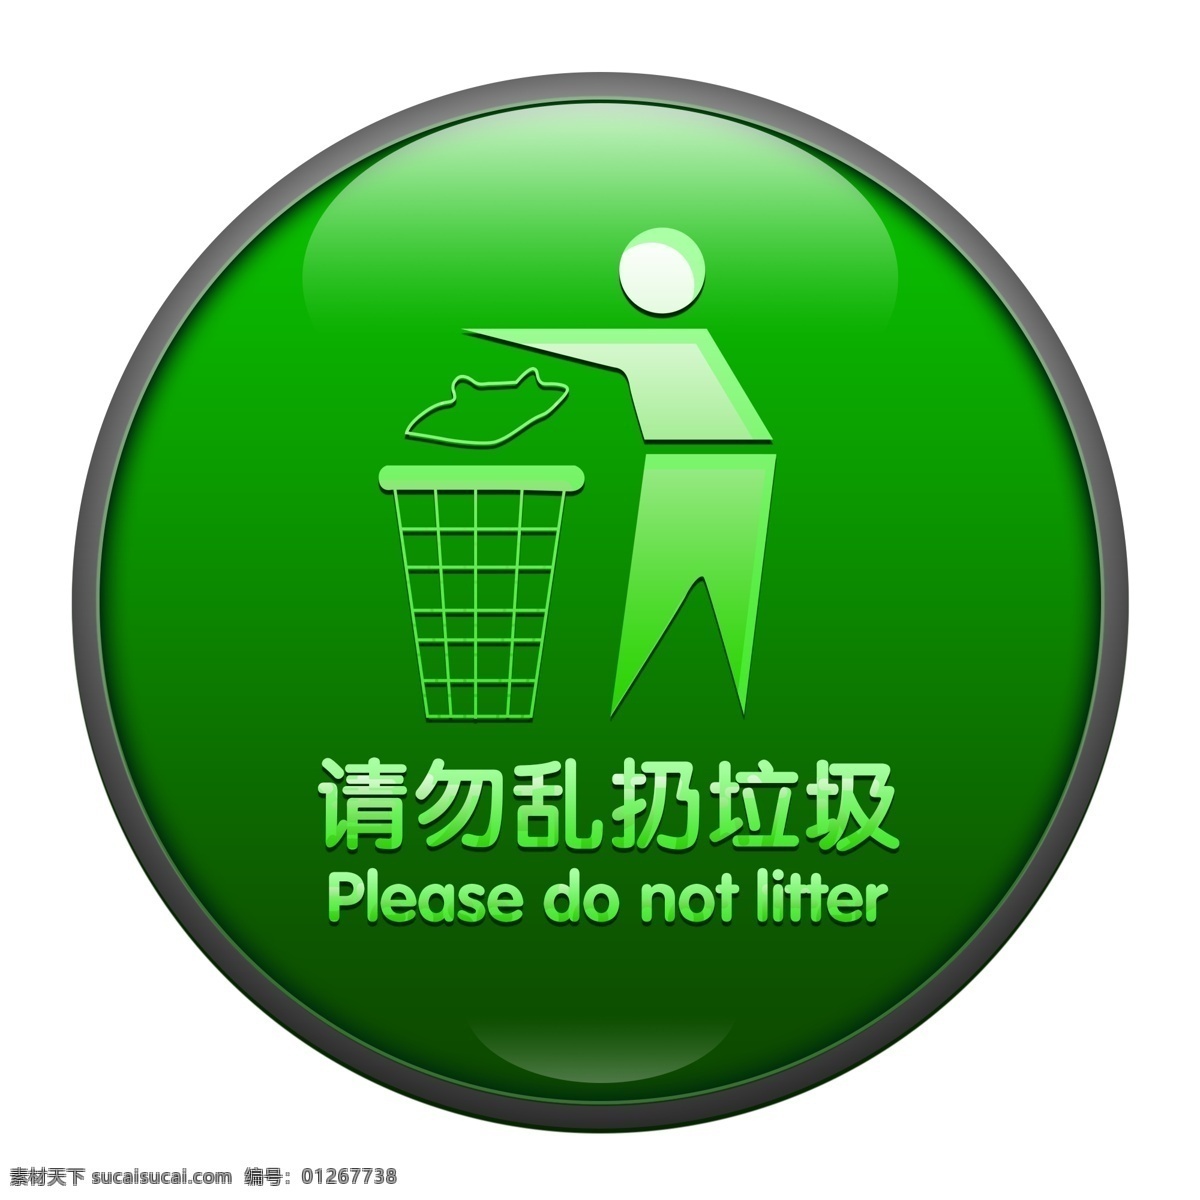 请勿 乱 扔 垃圾 绿色环保 标识 图标 ui图标 垃圾桶 环保图标 垃圾图标